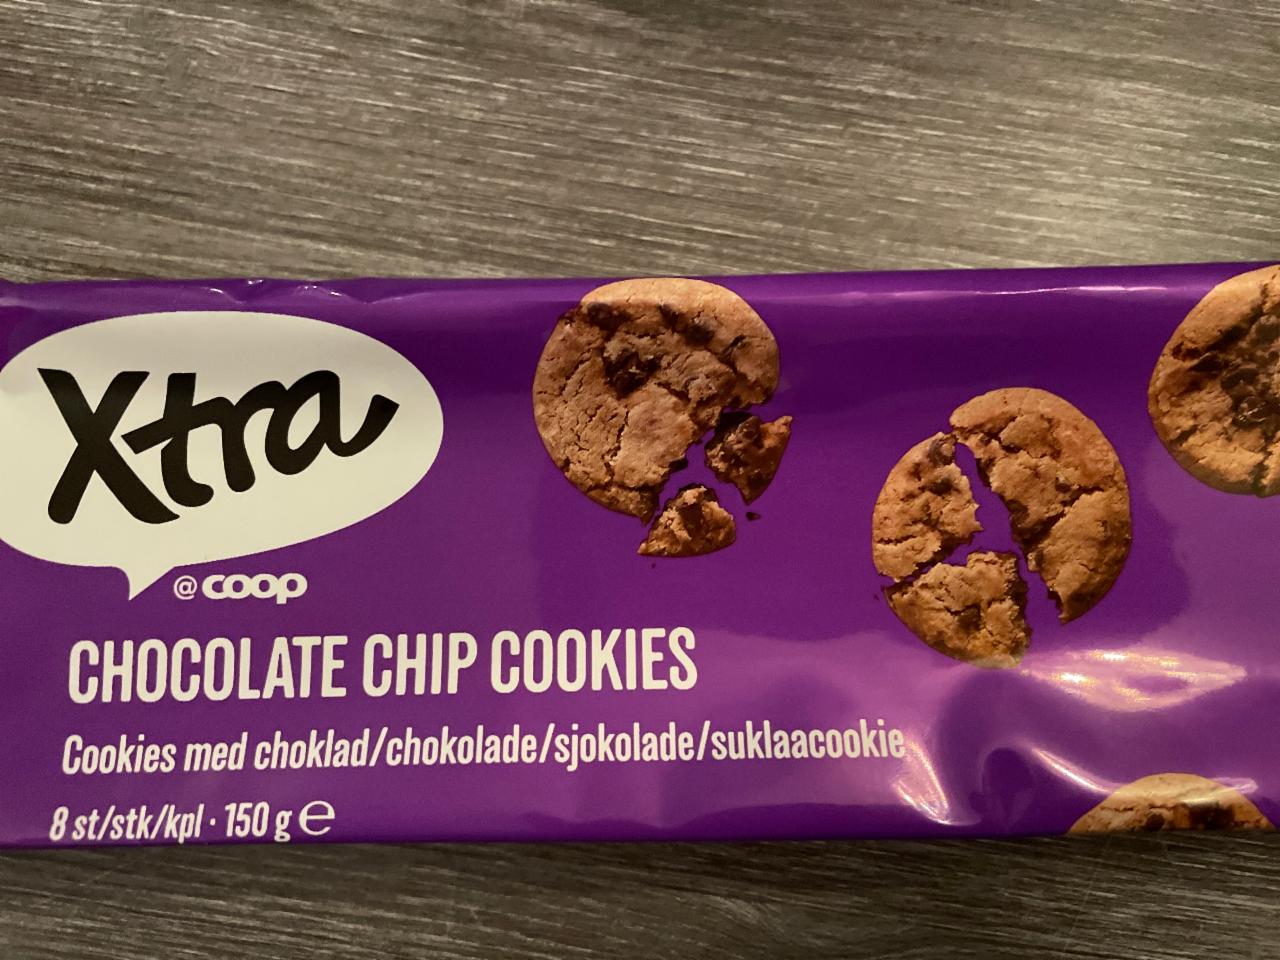 Фото - печенье с шоколадными кусочками Xtra